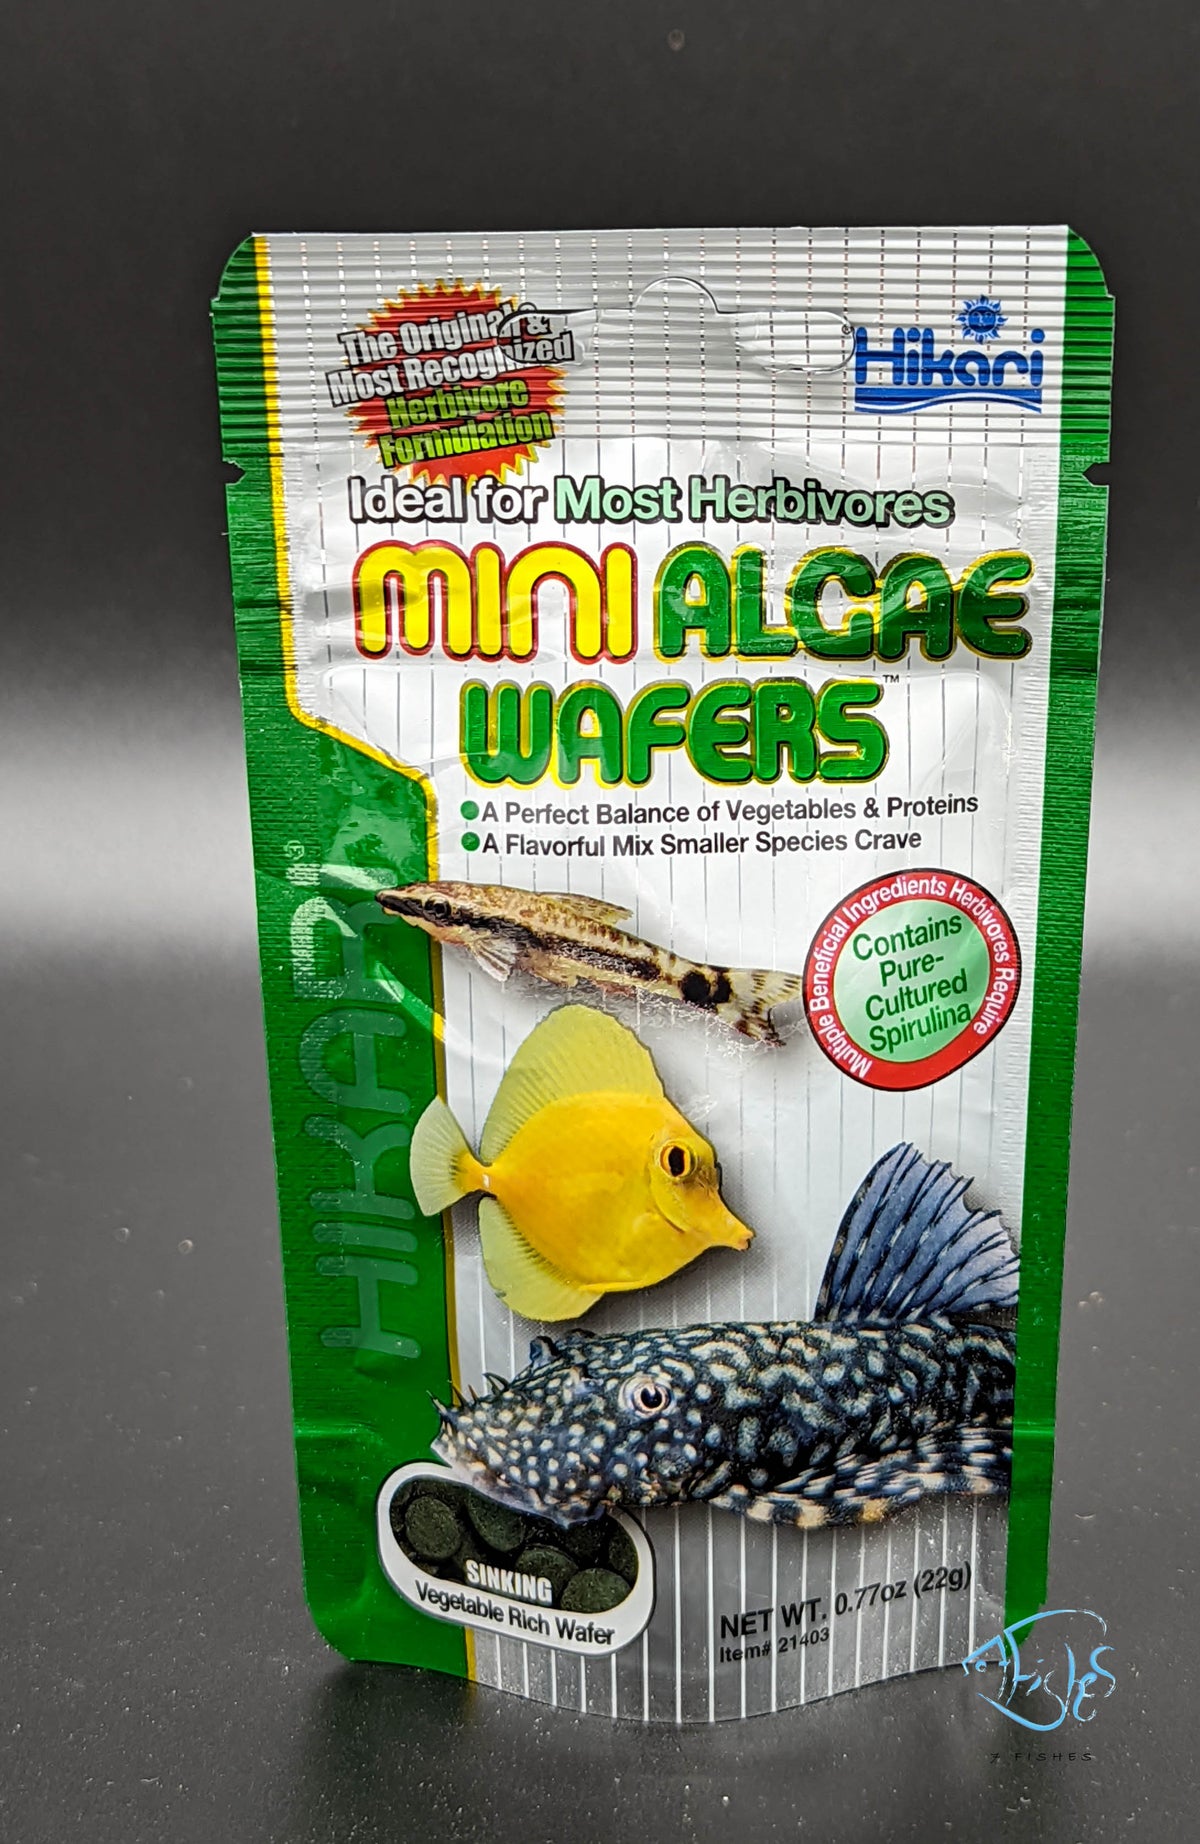 Hikari Mini Algae Wafer 22g